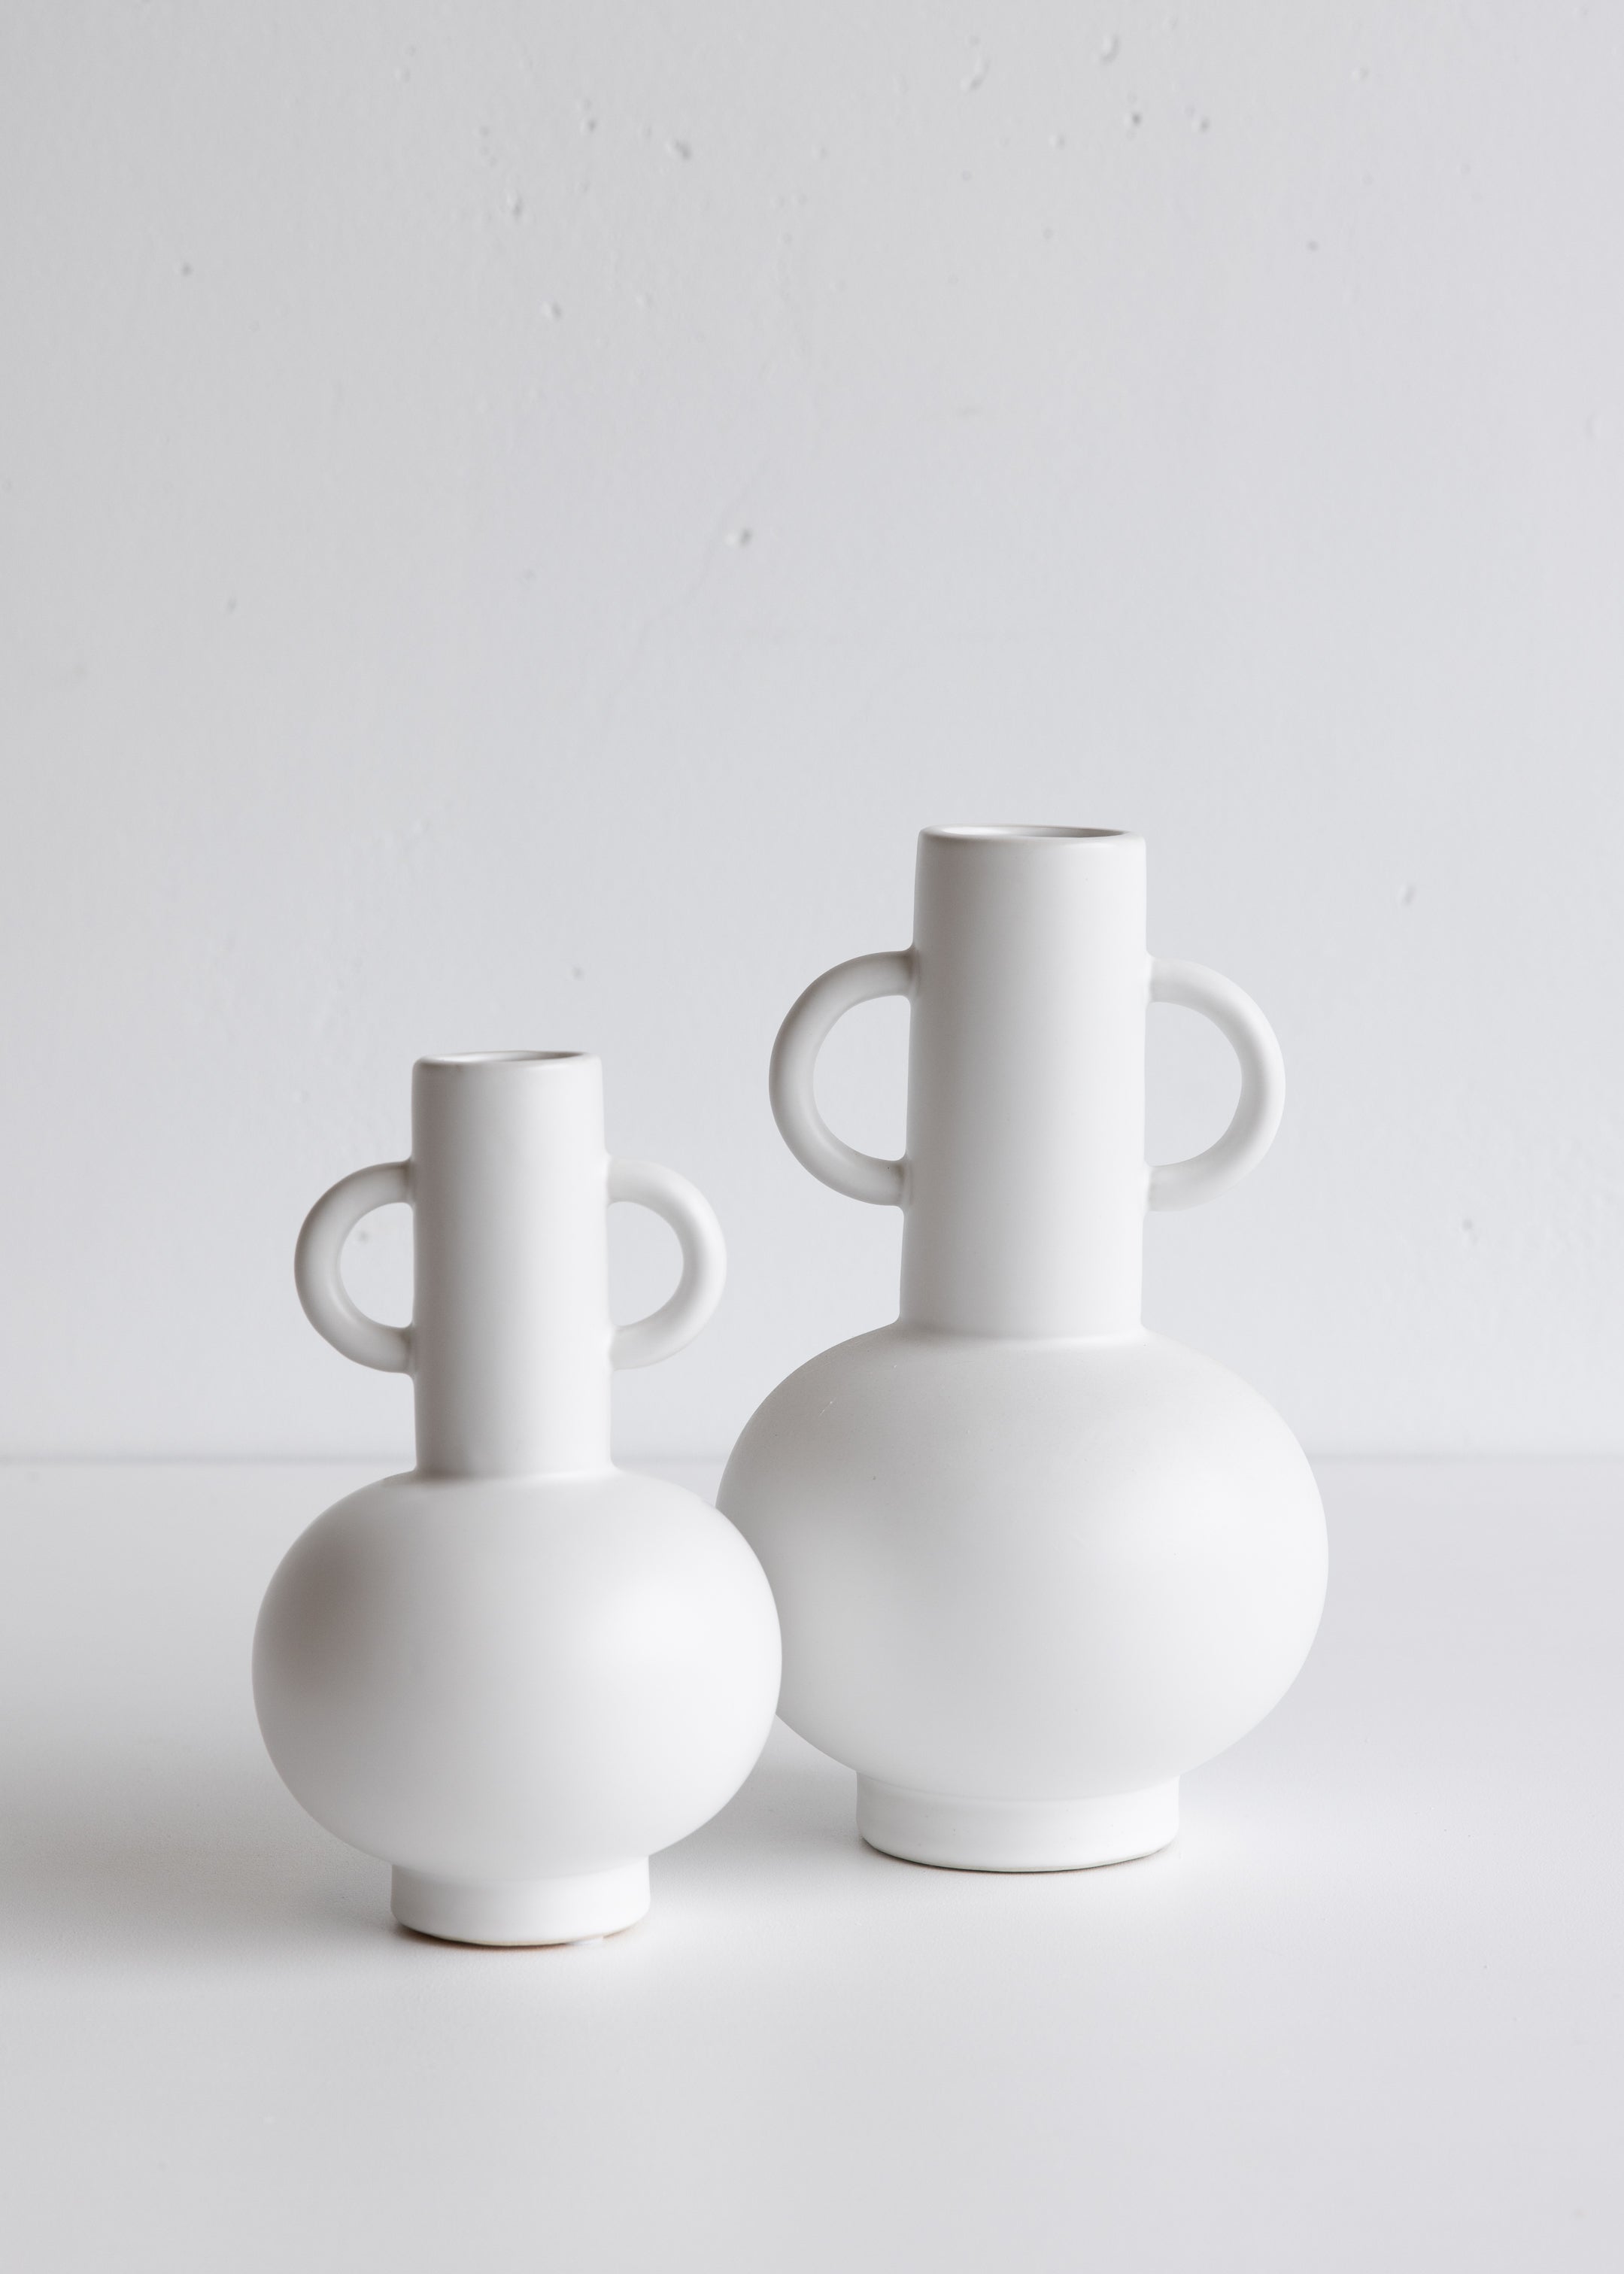 Louis Vase Small / White